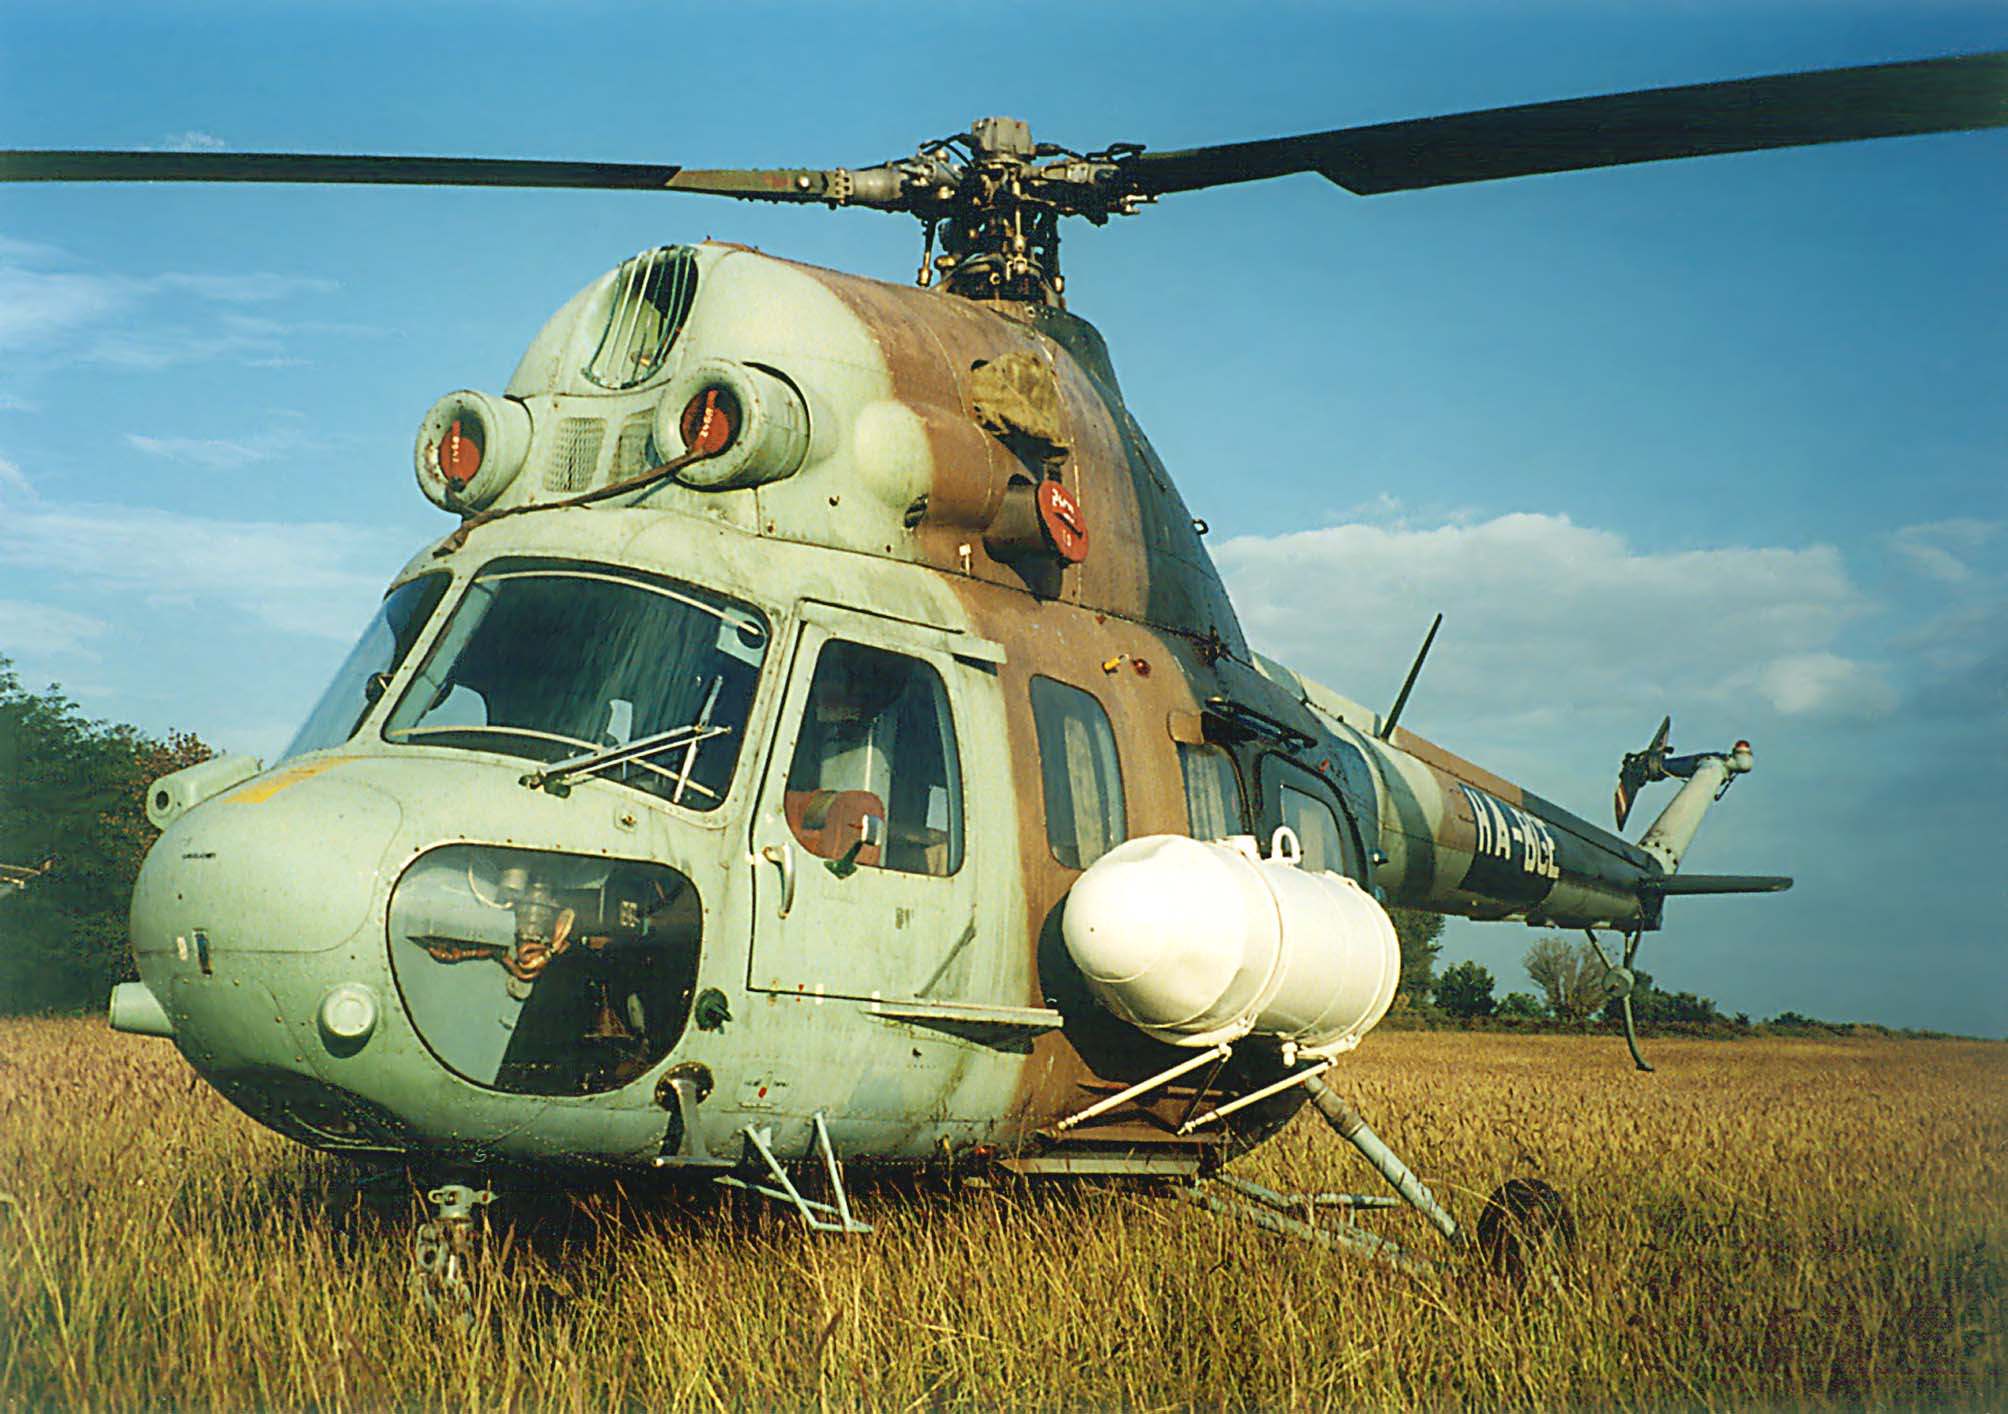 Egy közeli kép a helikopter orr-részérıl és a bal oldaláról.